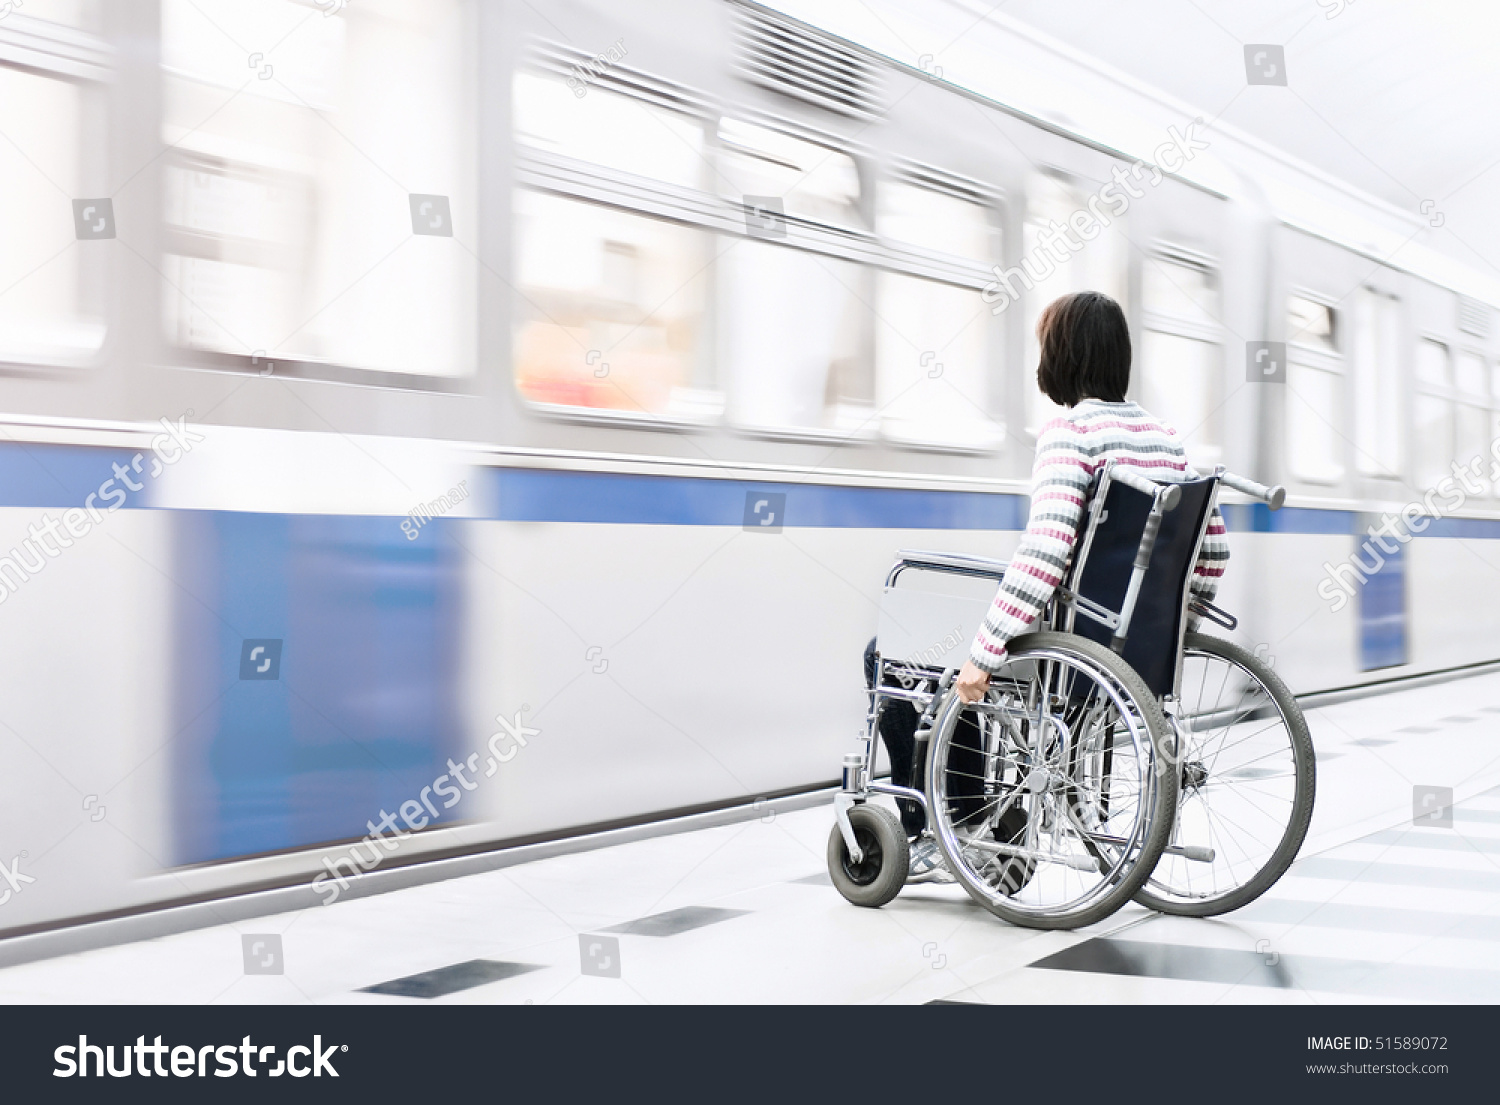 Транспортная доступность для инвалидов. Доступность объектов железнодорожного транспорта для маломобильных. Доступная среда ЖД. Доступность общественного транспорта. Поезд для инвалидов.